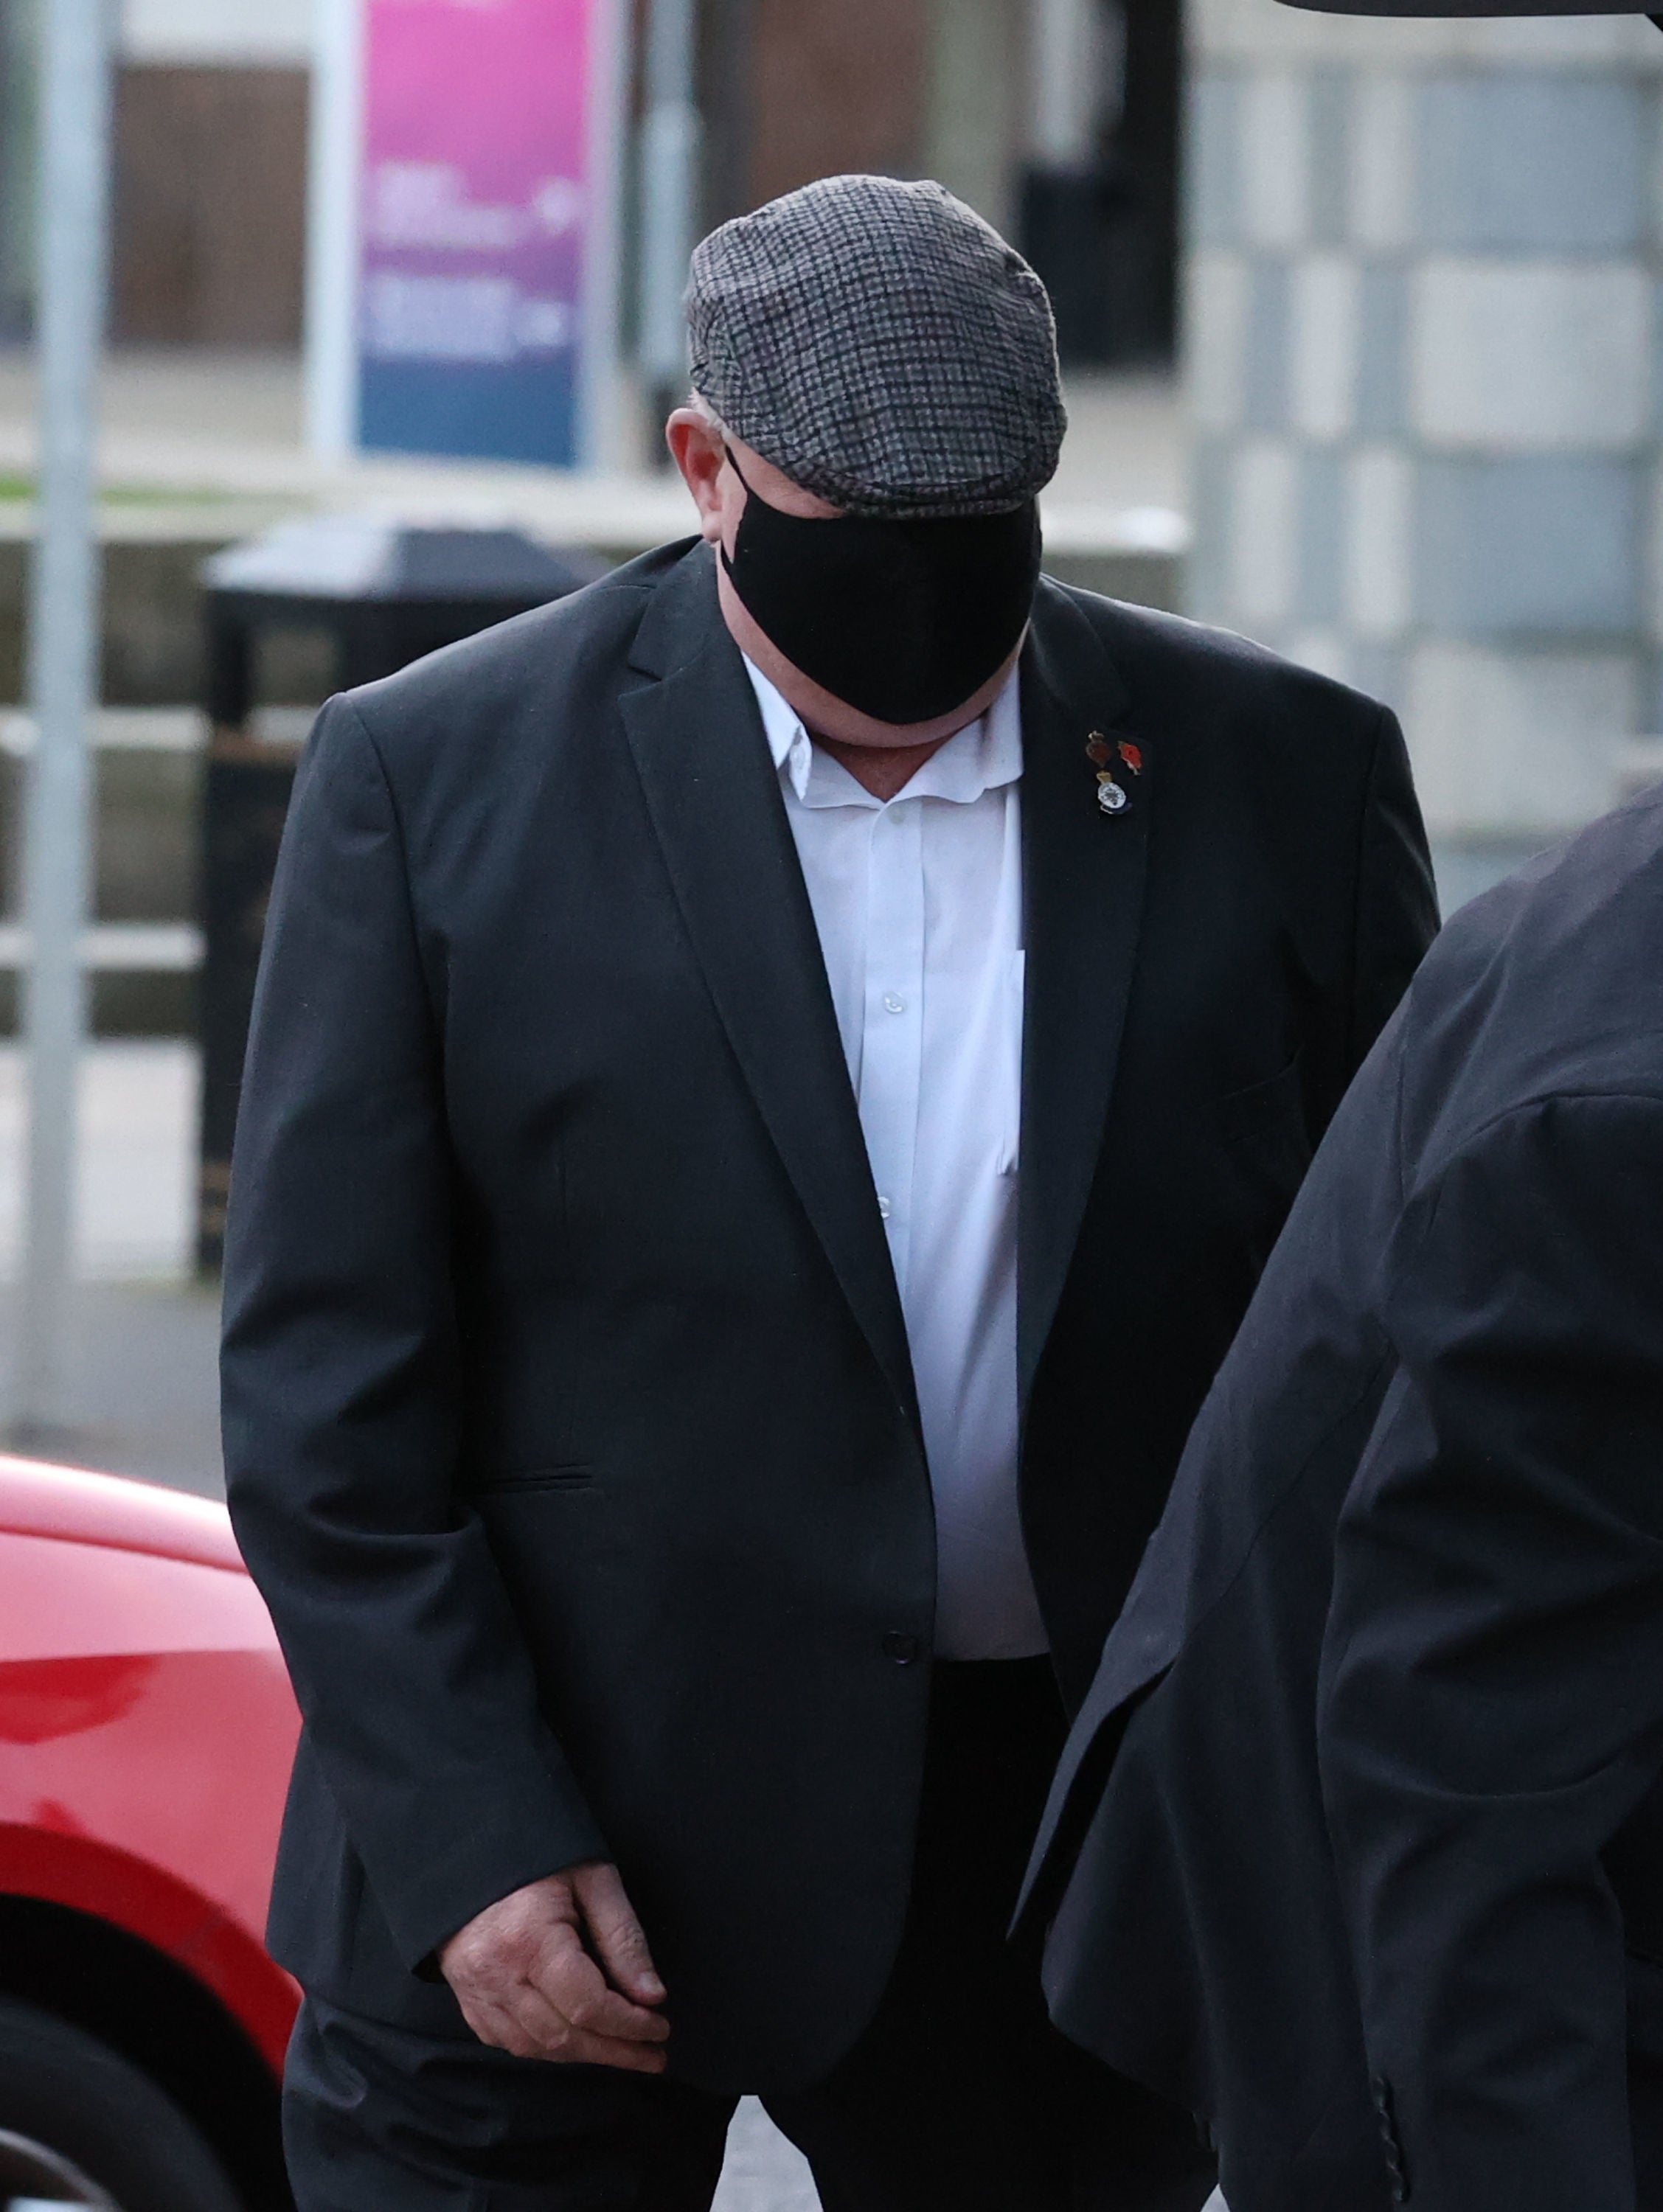 David Holden arrives at Laganside Courts in Belfast